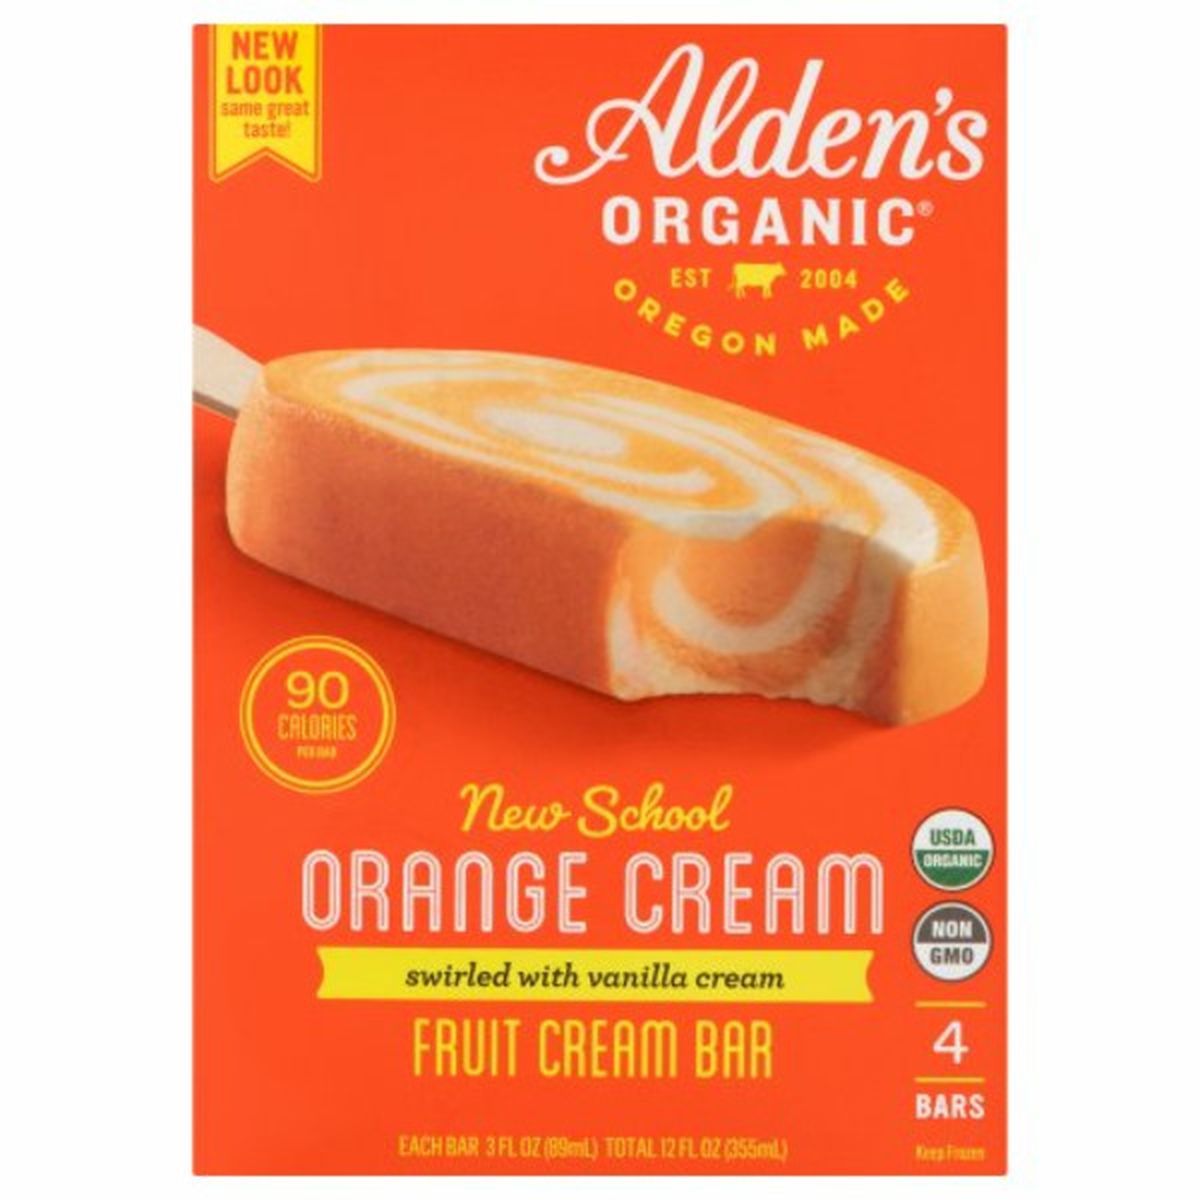 Calories in Alden's Organic Fruit Cream Bar, New School Orange Cream